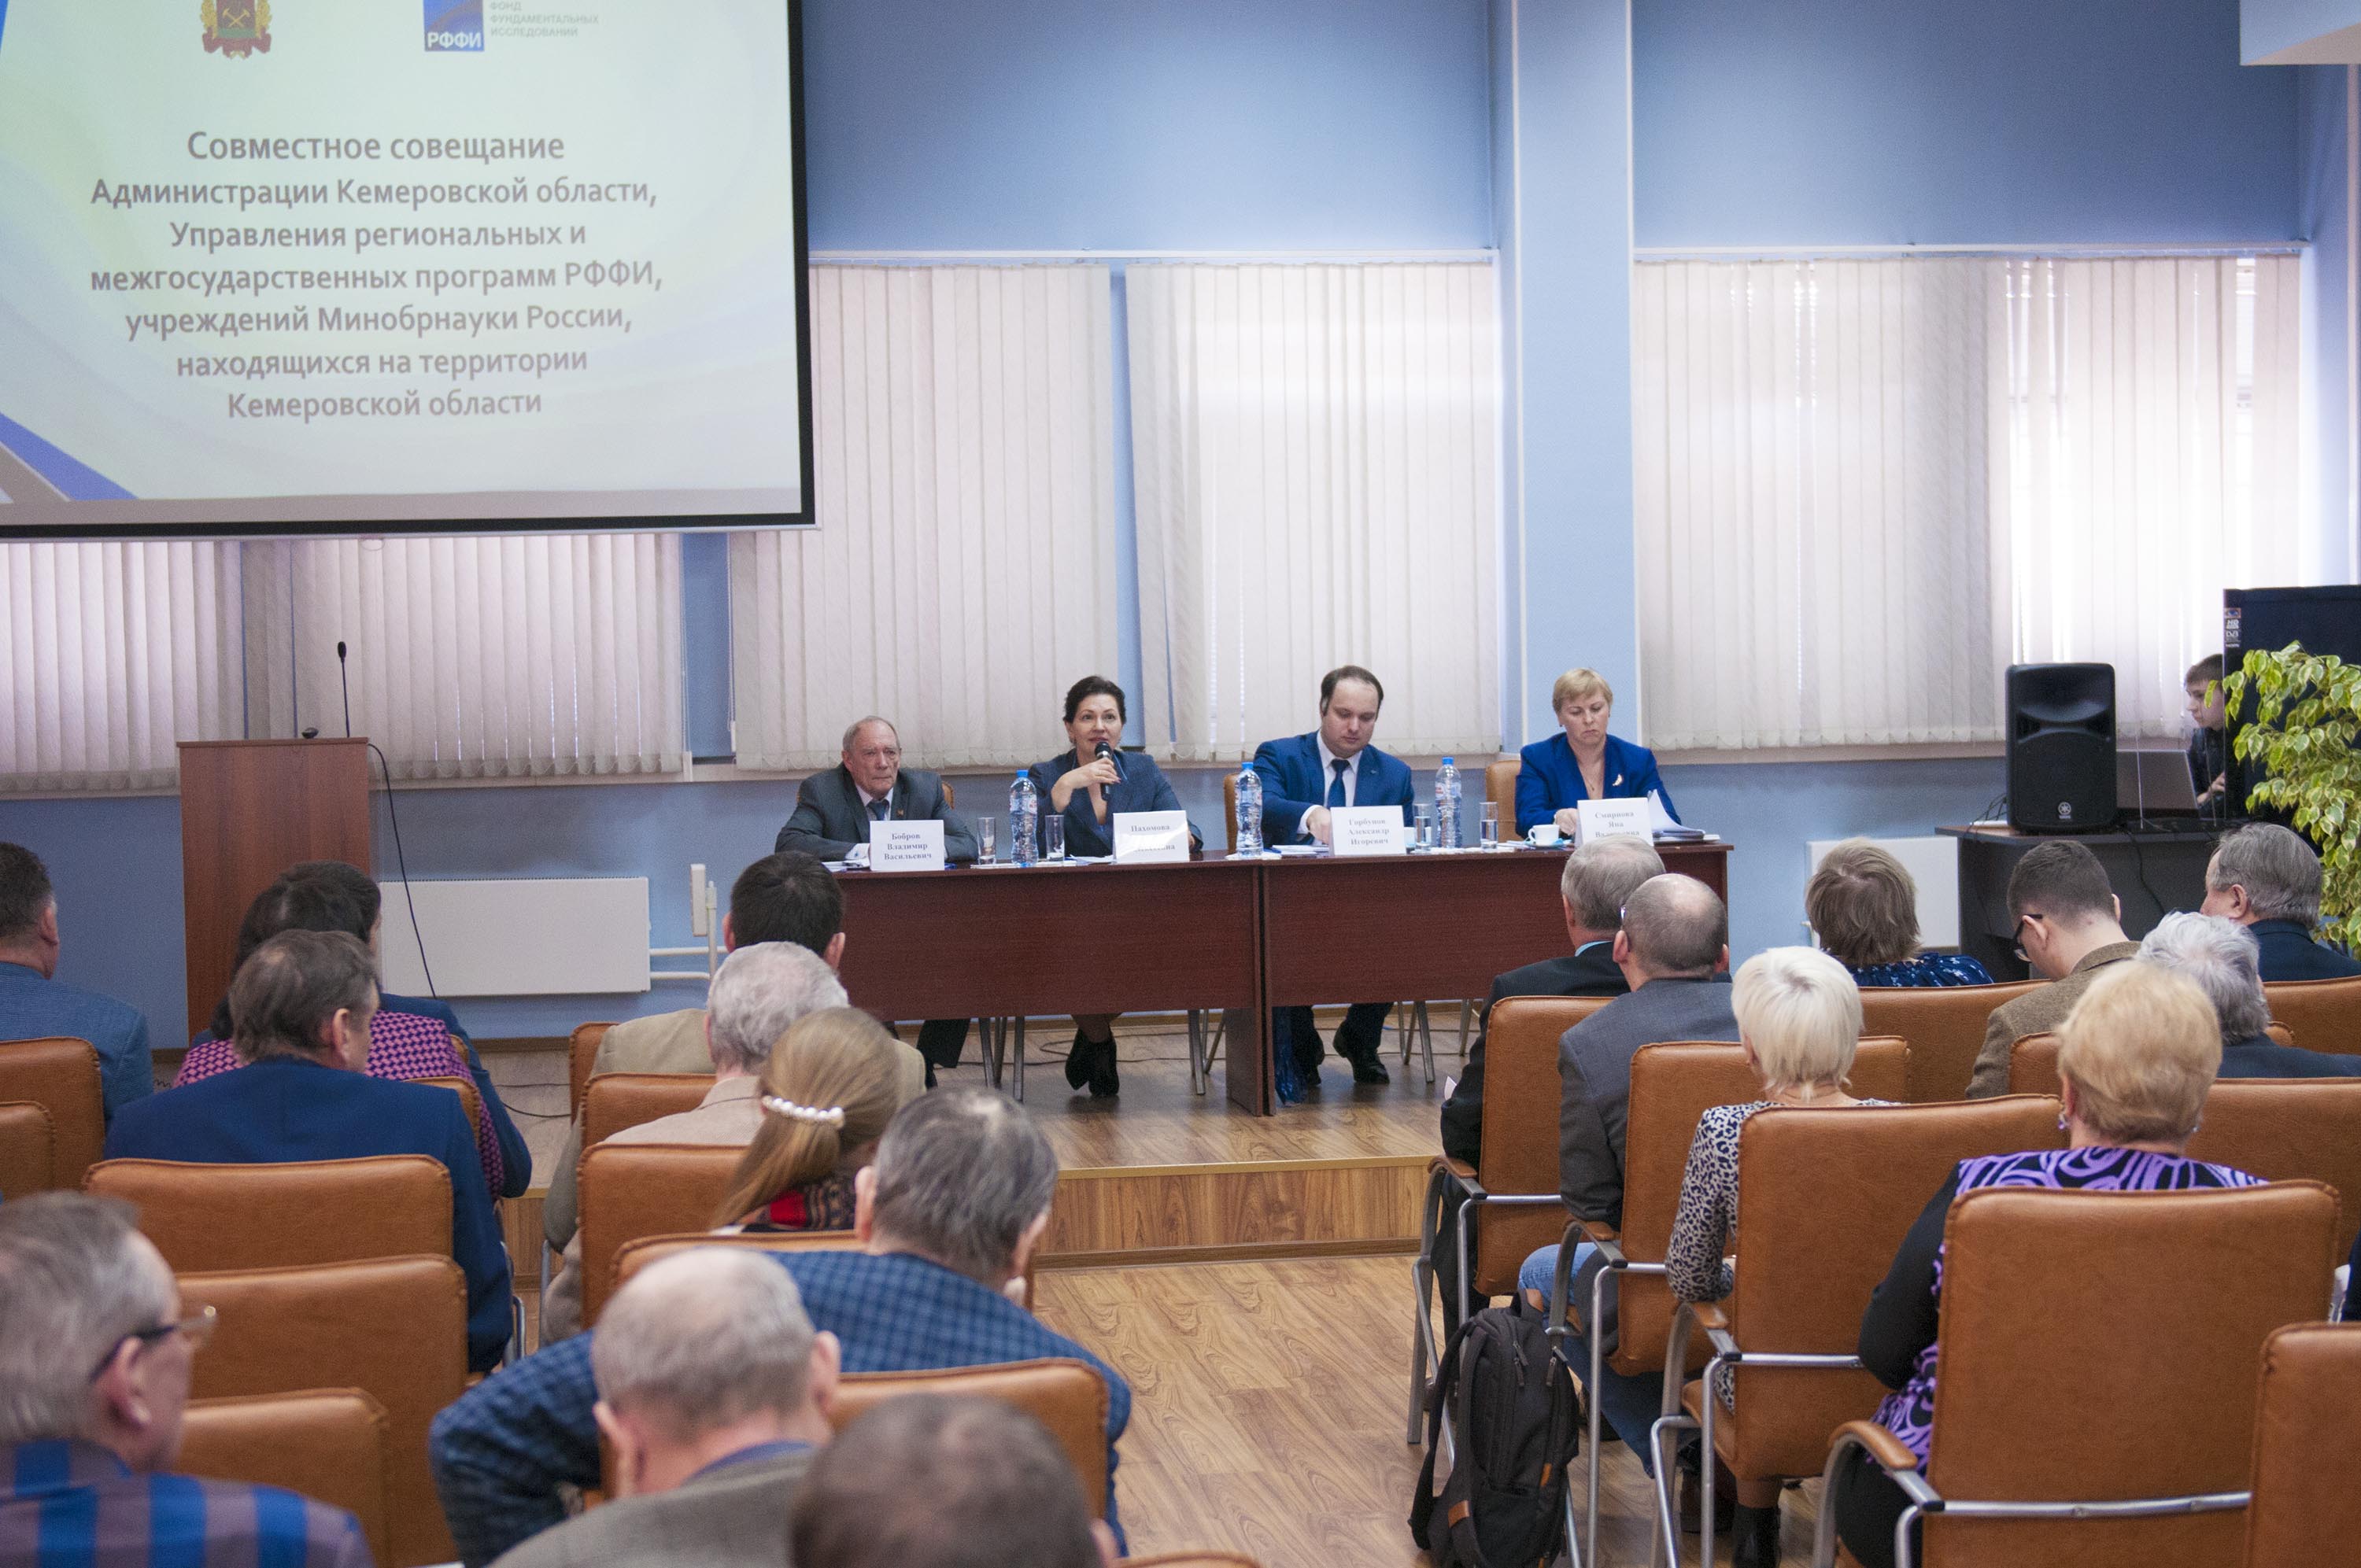 Представители Российского фонда фундаментальных исследований провели семинар для кузбасских ученых